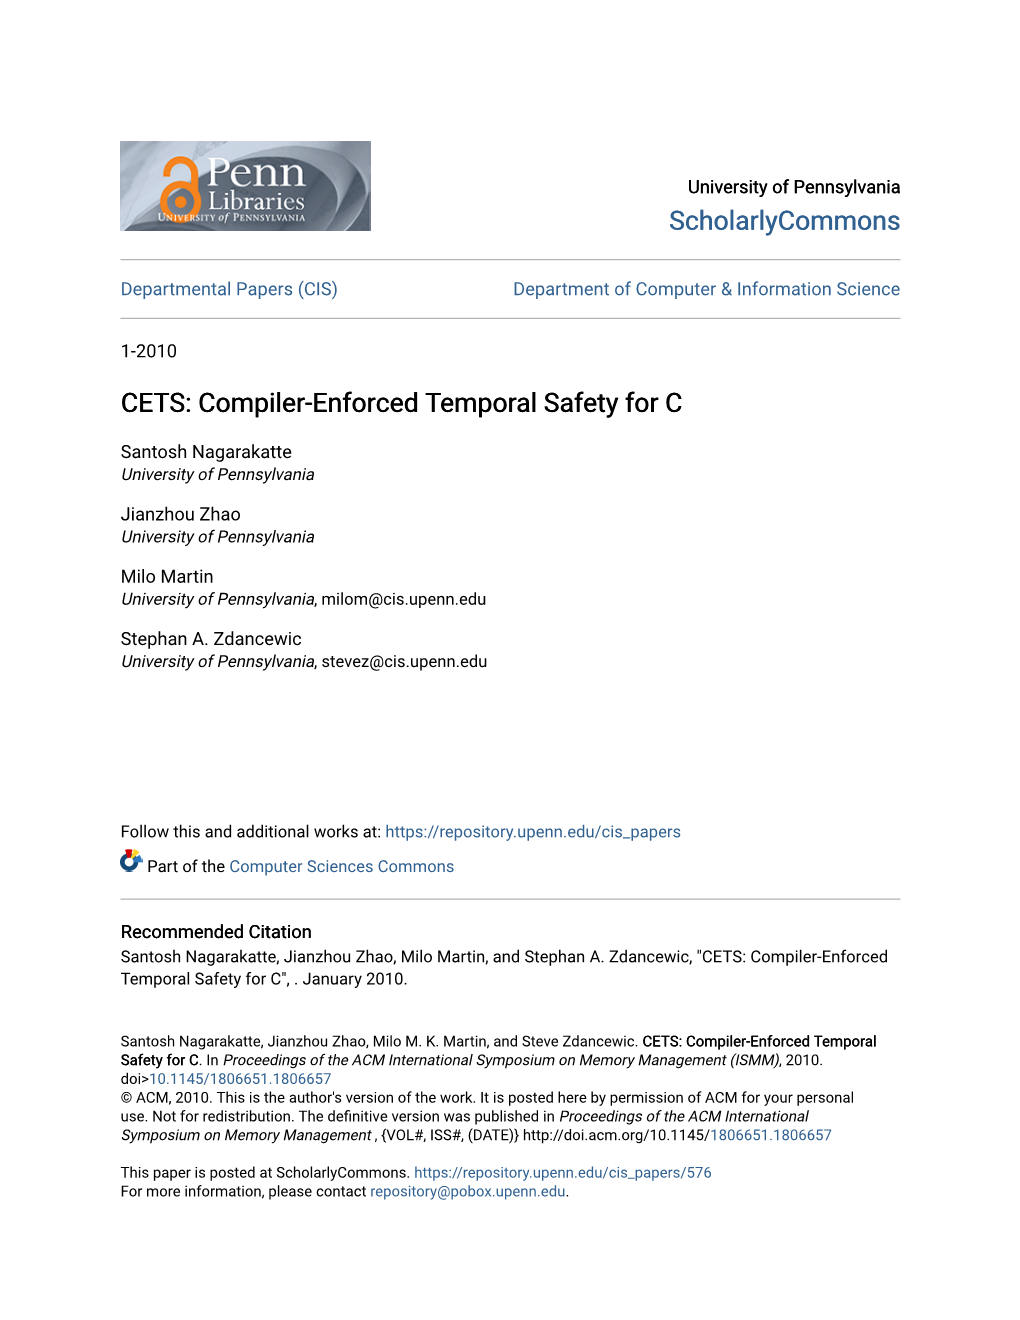 CETS: Compiler-Enforced Temporal Safety for C